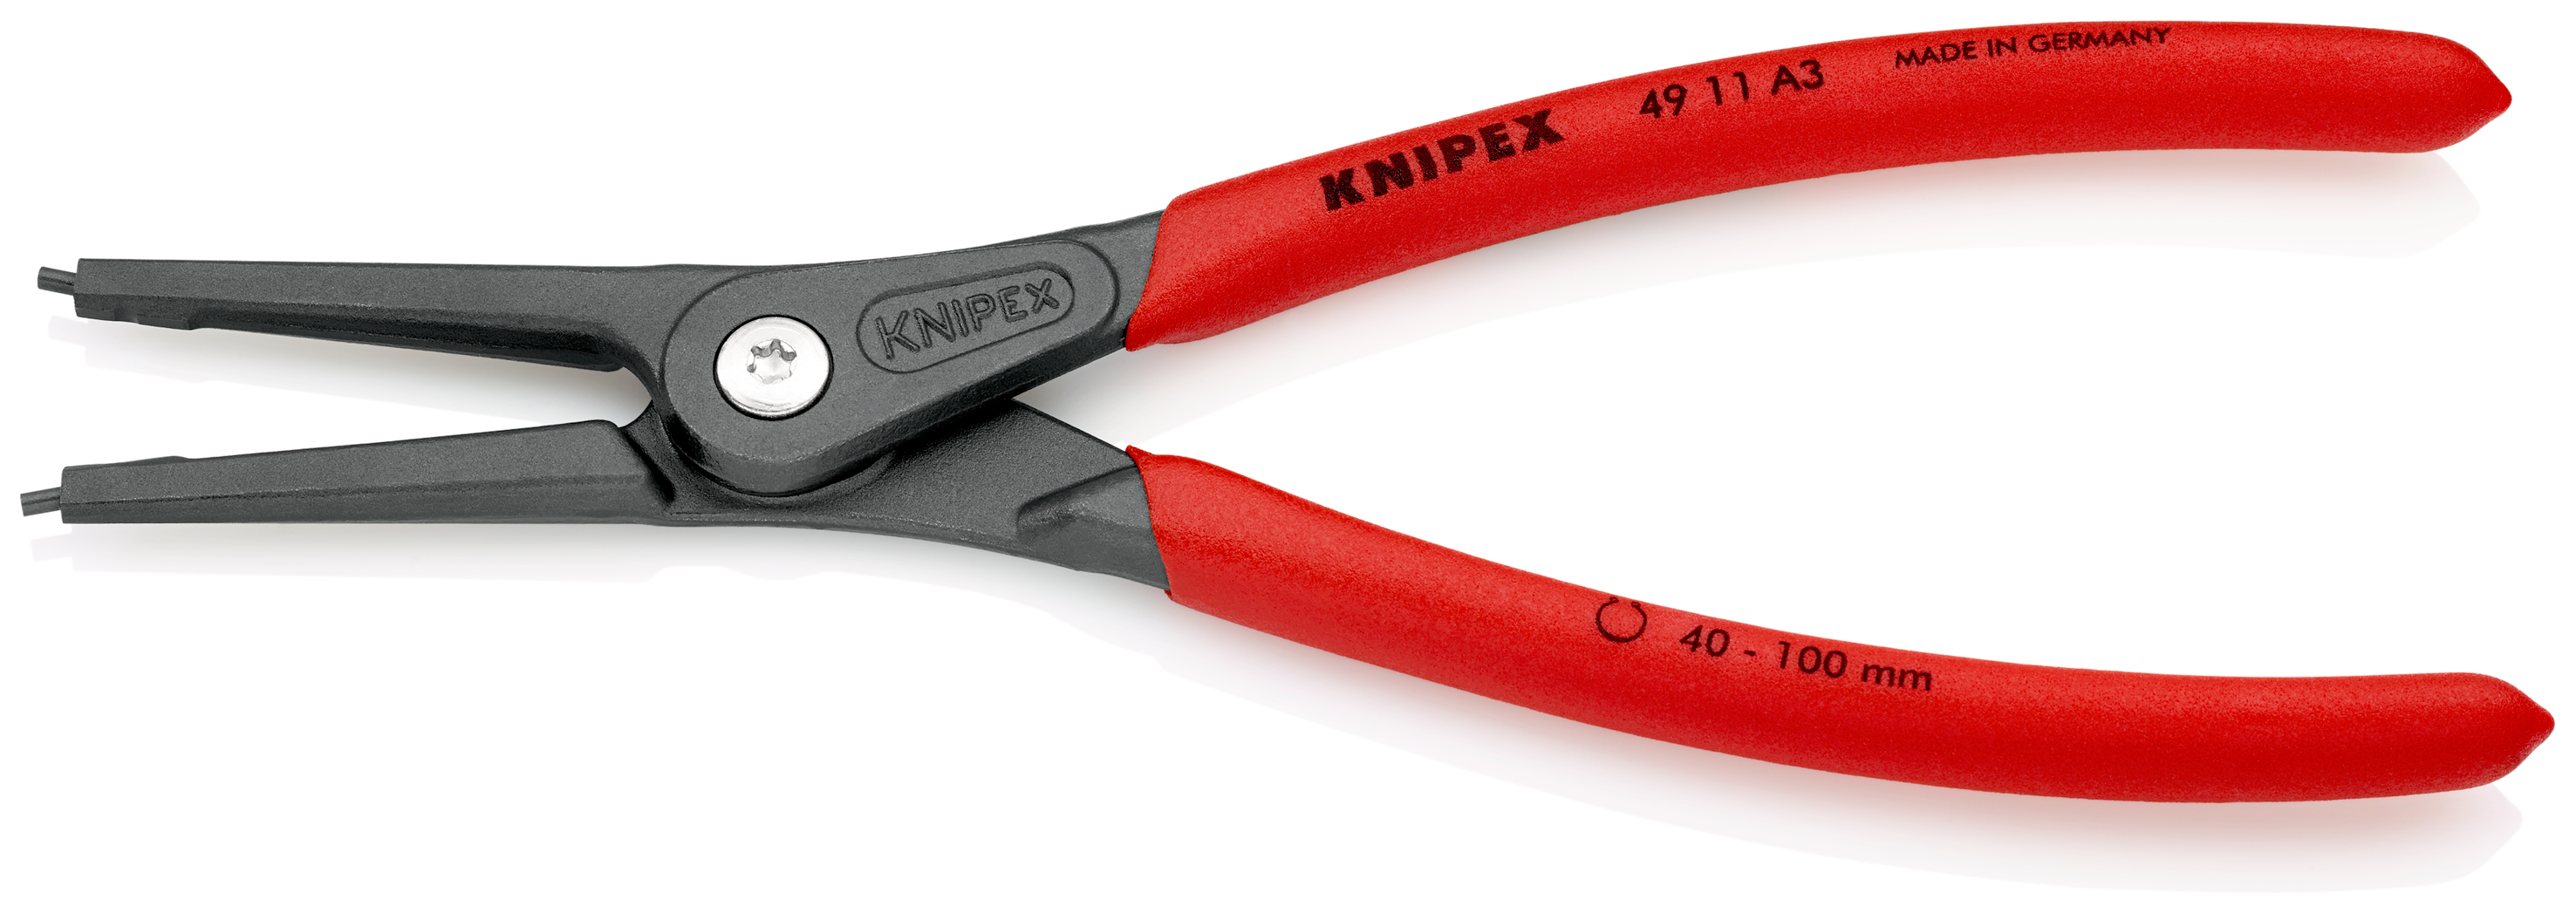 Knipex 4911A3 Cleste pentru inele de siguranță de interior, lungime 225 mm